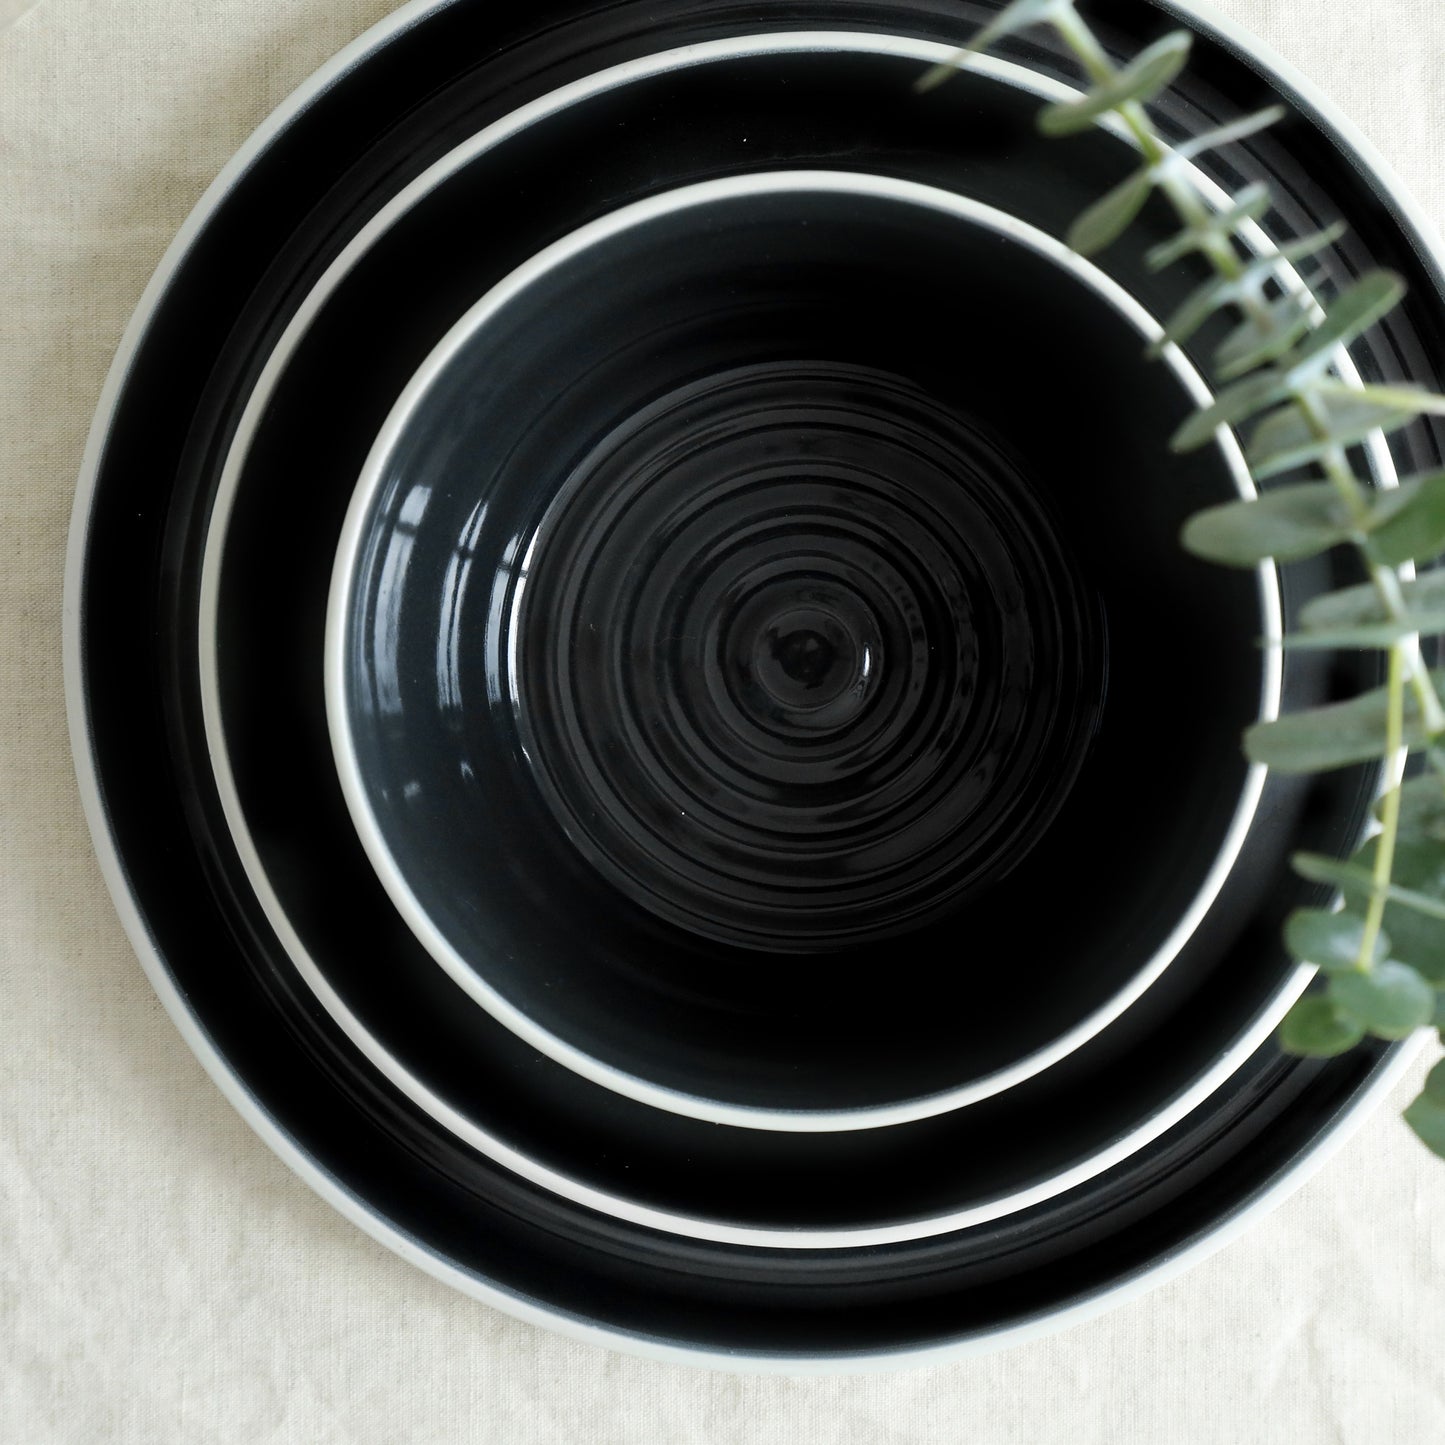 Elica Stoneware Dinnerware Set - Black And Beige